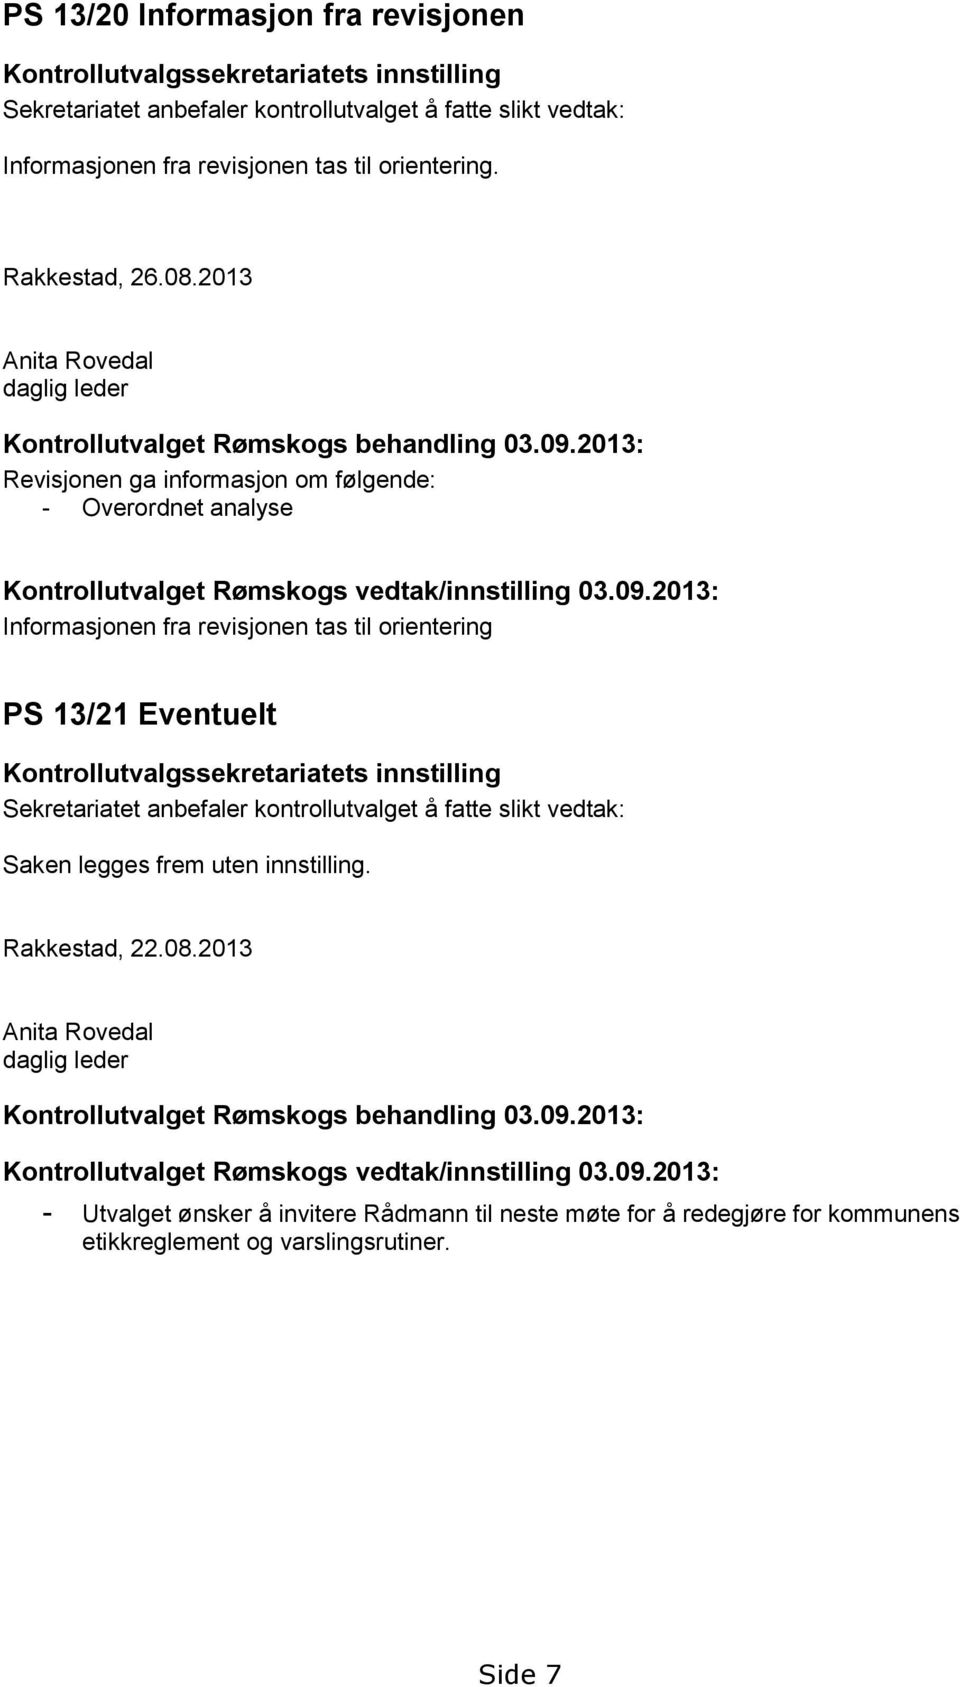 2013: Revisjonen ga informasjon om følgende: - Overordnet analyse Kontrollutvalget Rømskogs vedtak/innstilling 03.09.